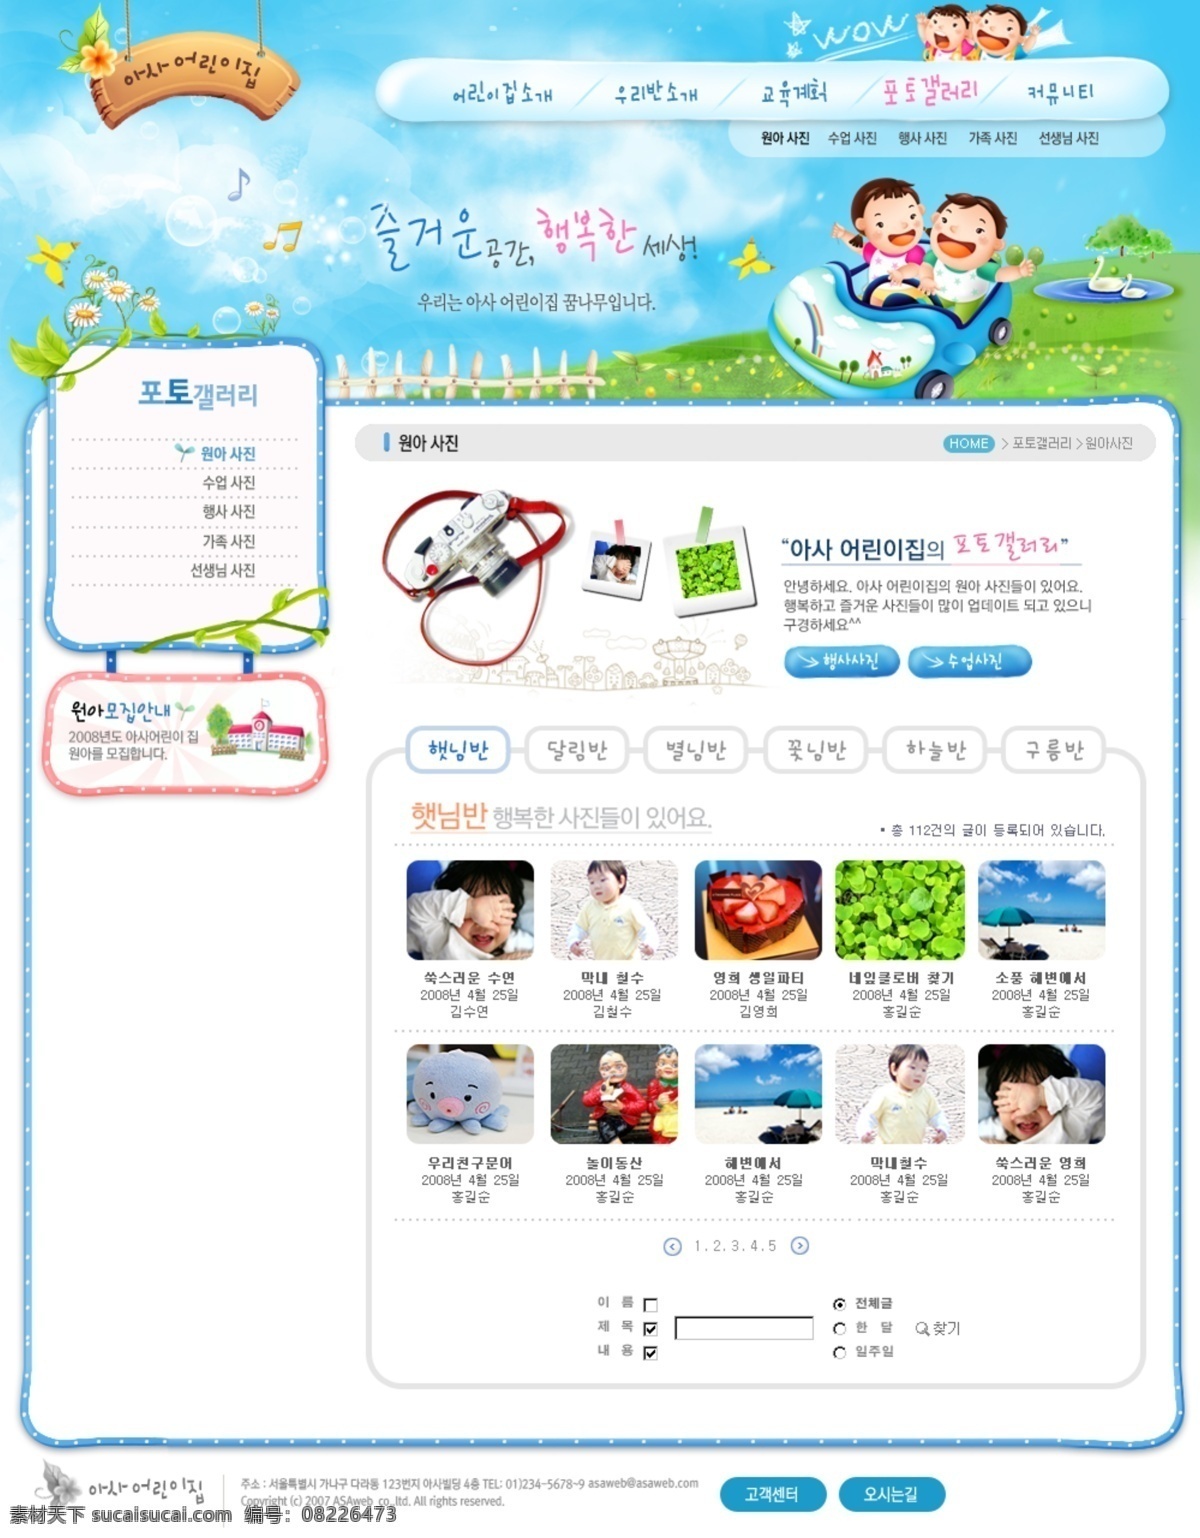 韩国 卡通 幼儿园 网页模板 内页 儿童 儿童网站 韩国模板 卡通人物 卡通网页模板 卡通字母 幼儿园网站 源文件 网页素材